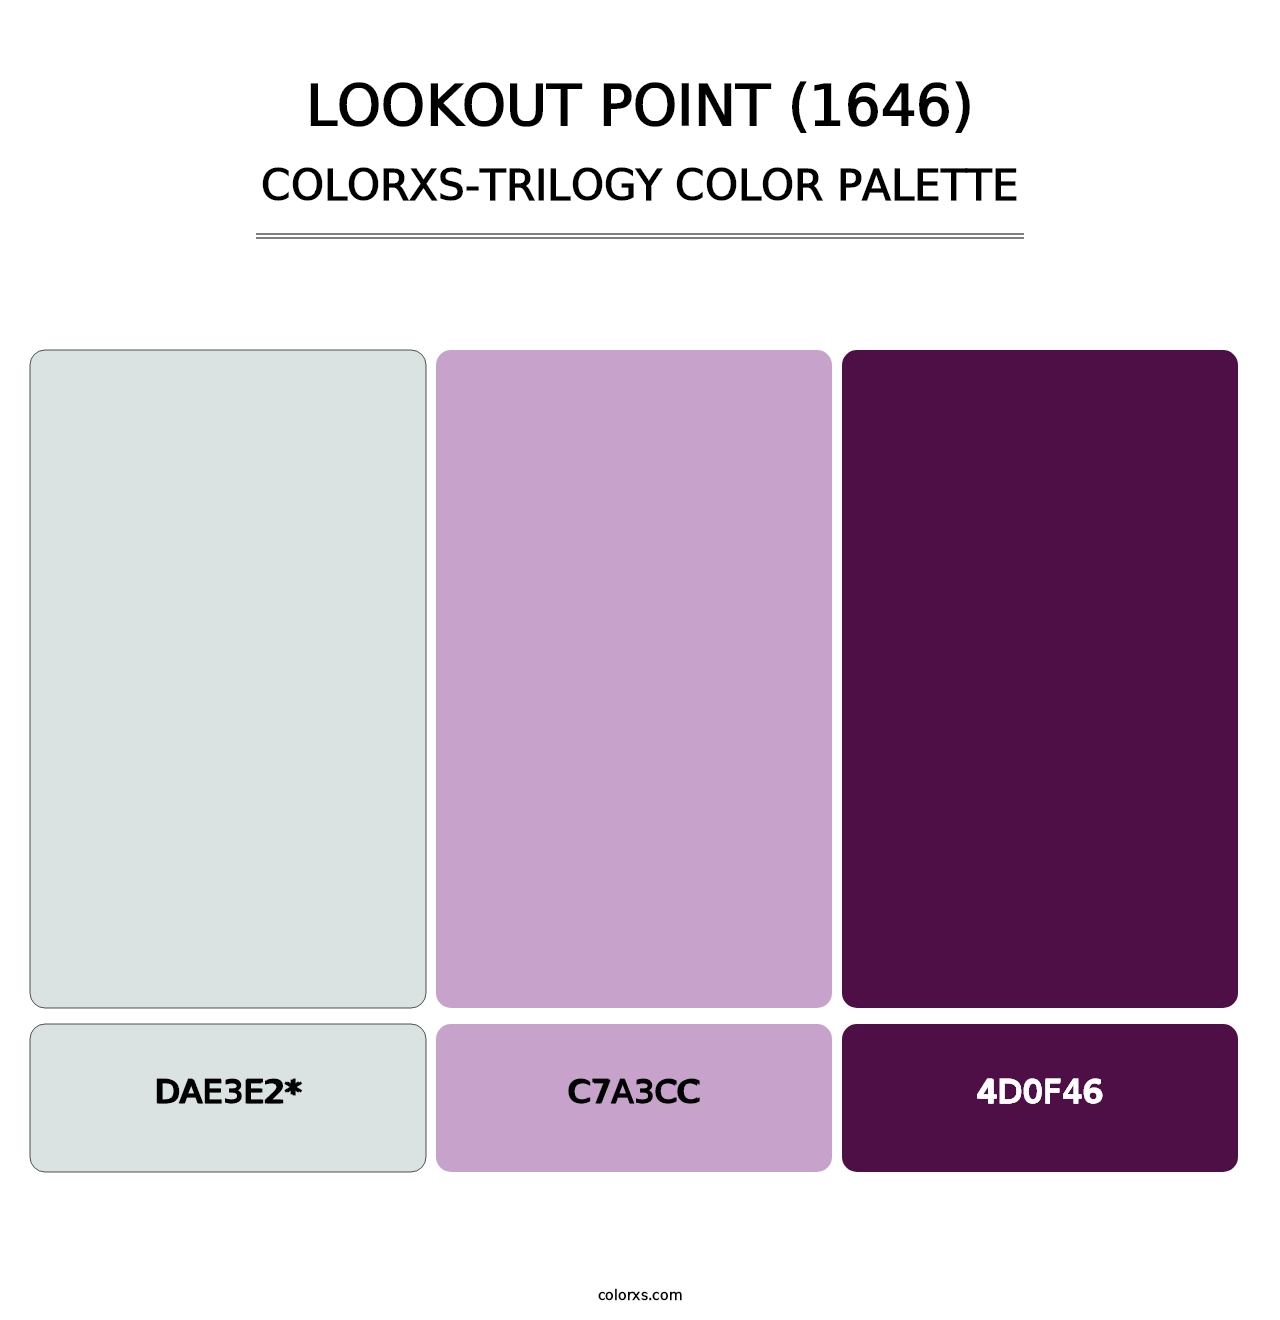 Lookout Point (1646) - Colorxs Trilogy Palette